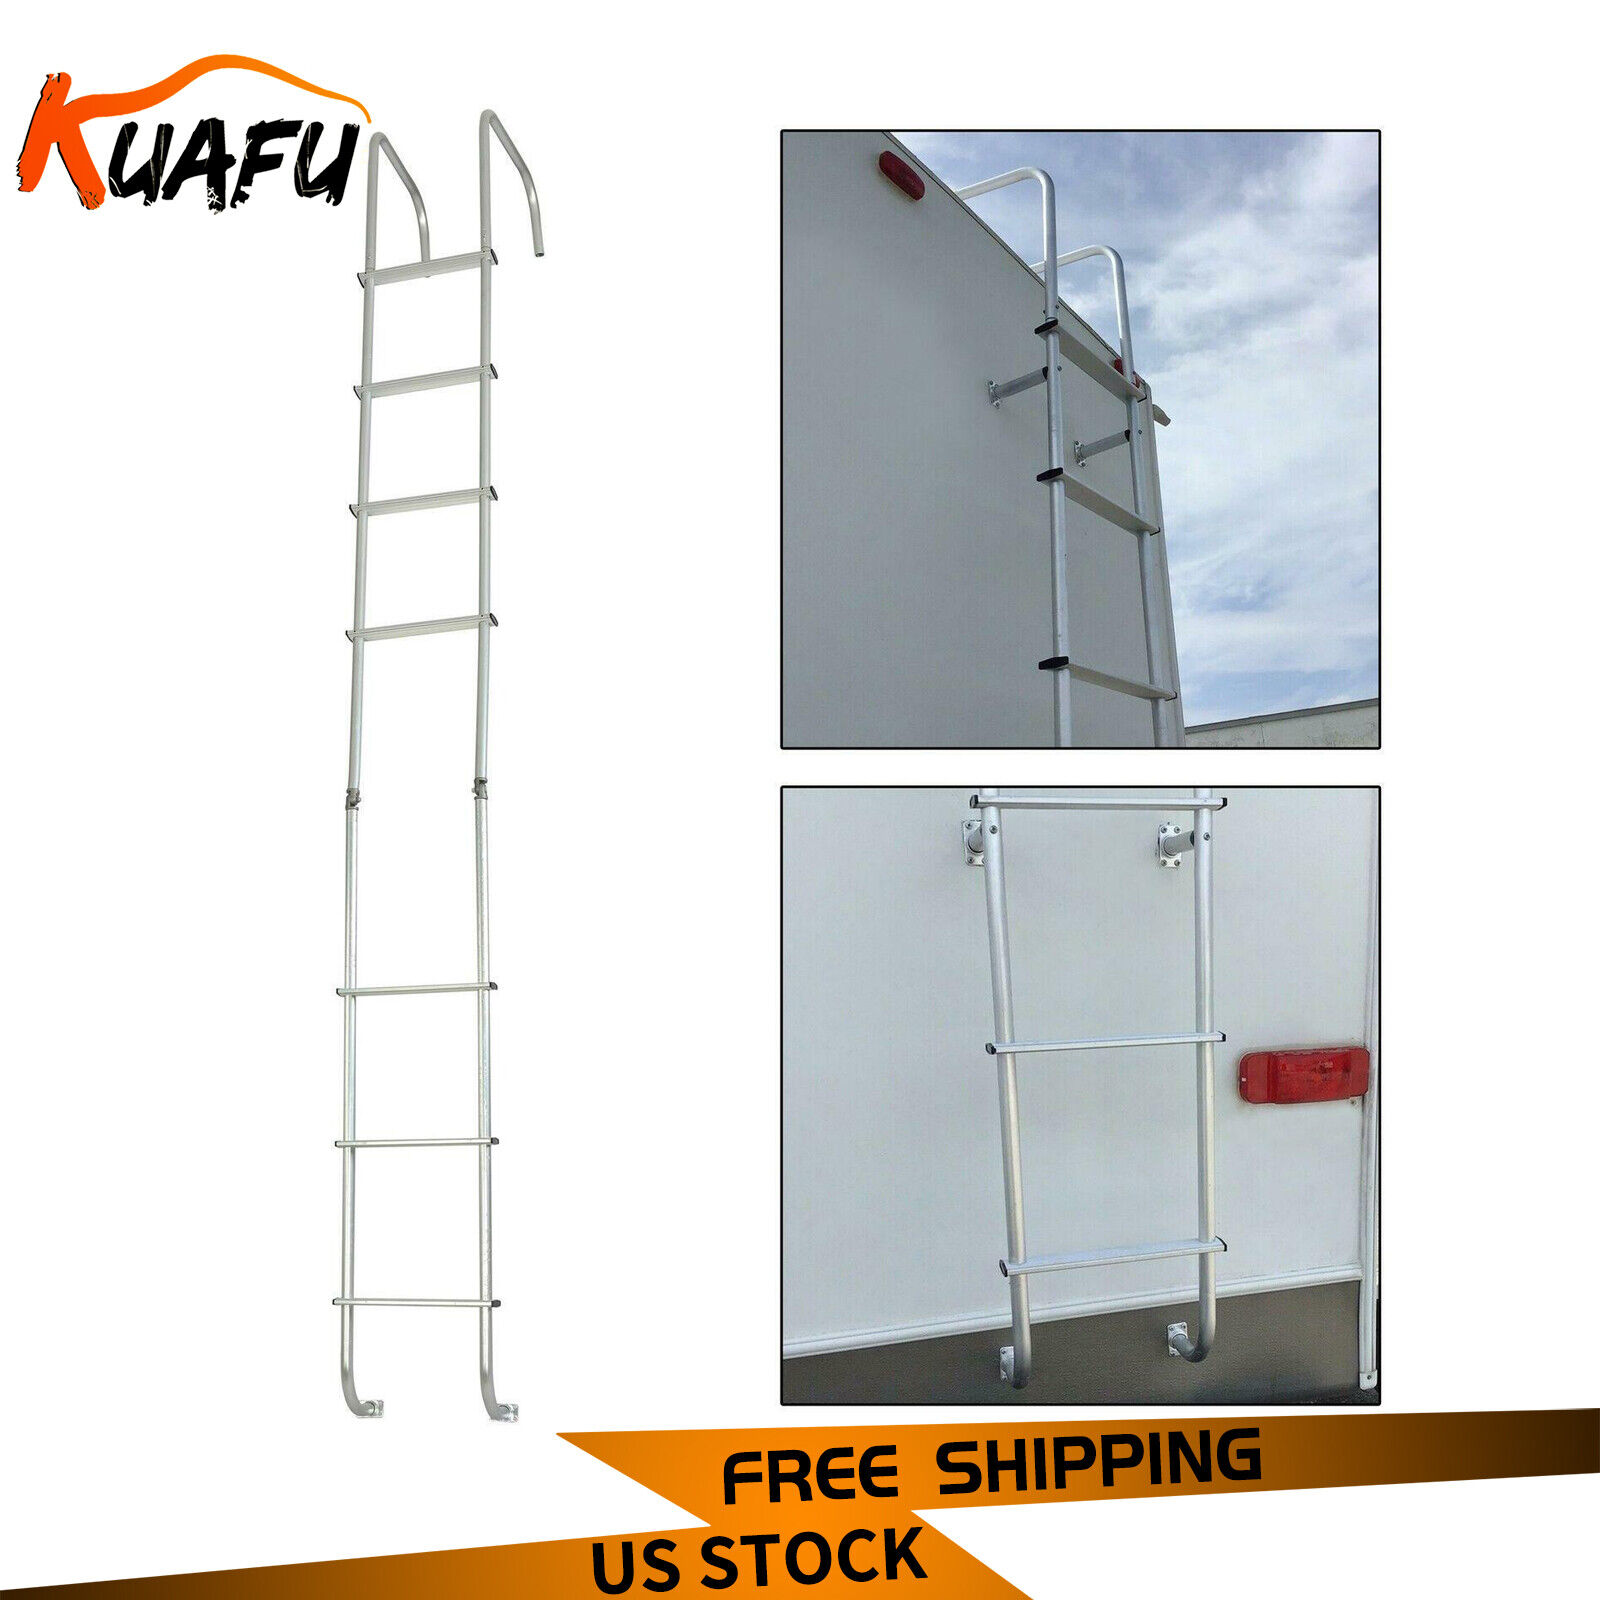 KUAFU Silver Aluminiumn Universal Exterior RV Ladder Replace for LA-401 139.21